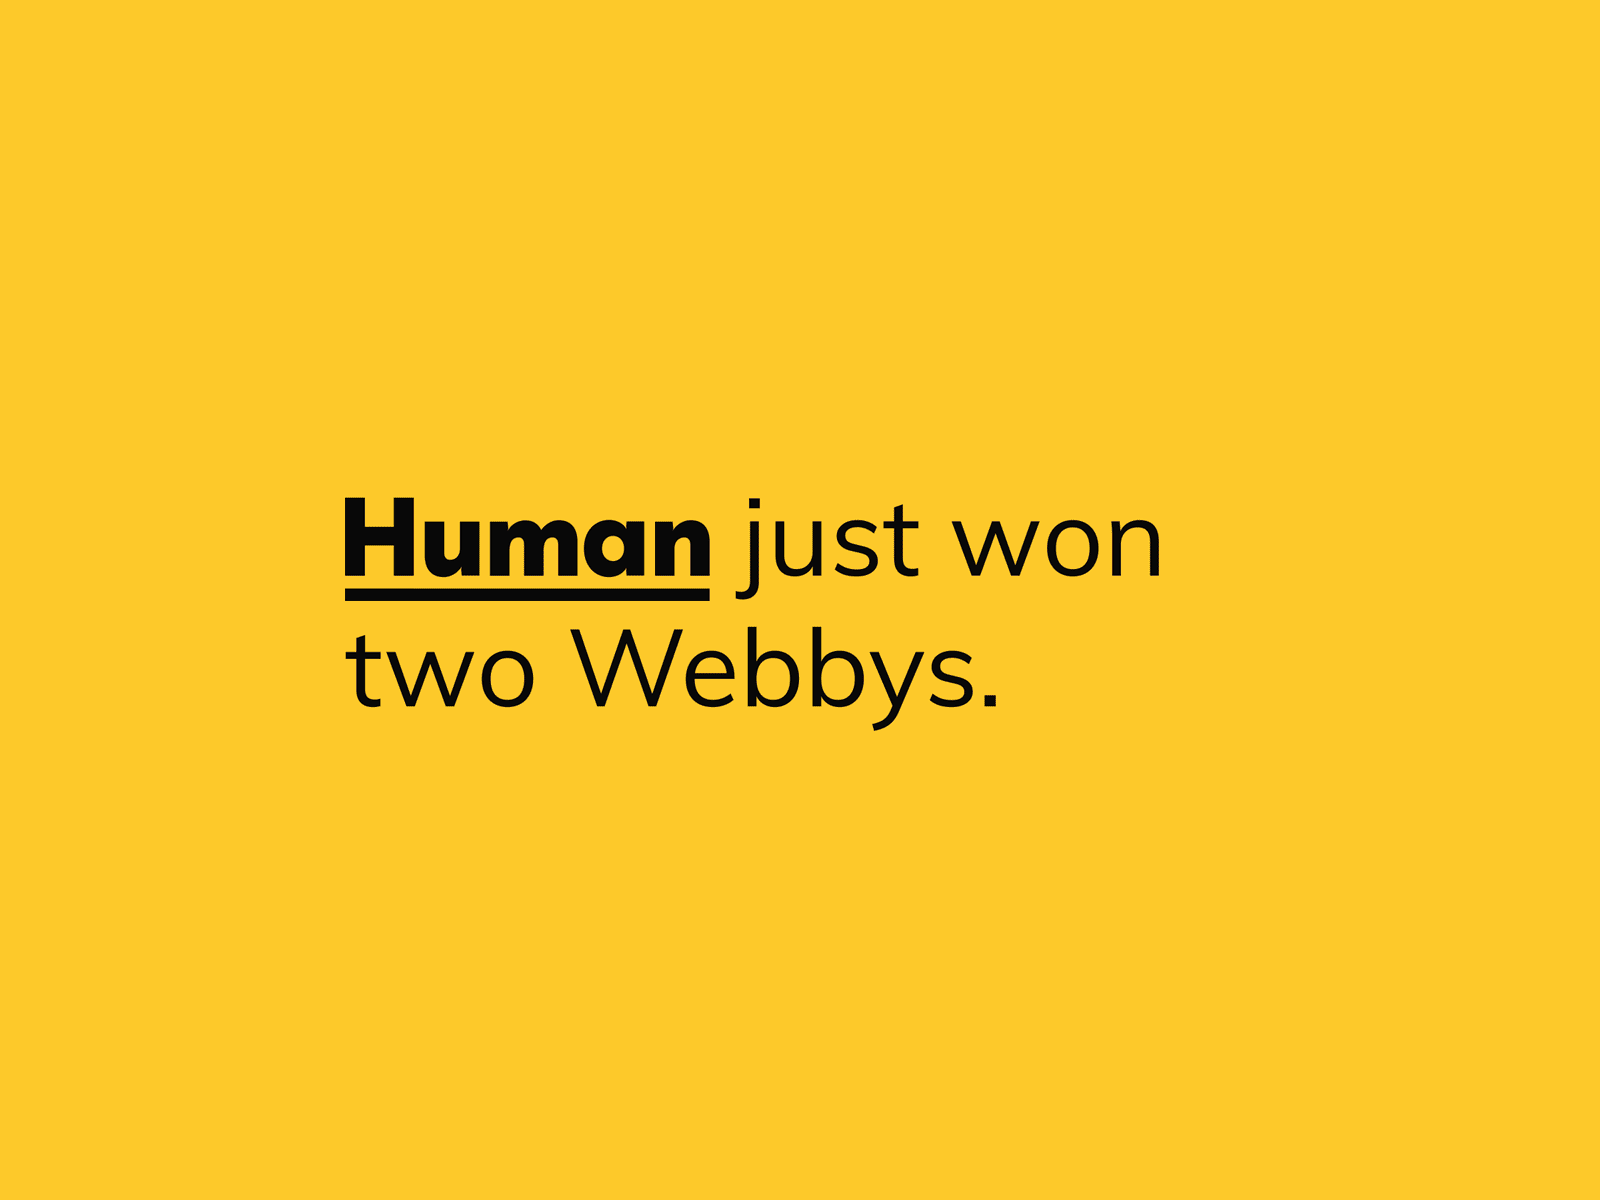 We won two Webbys